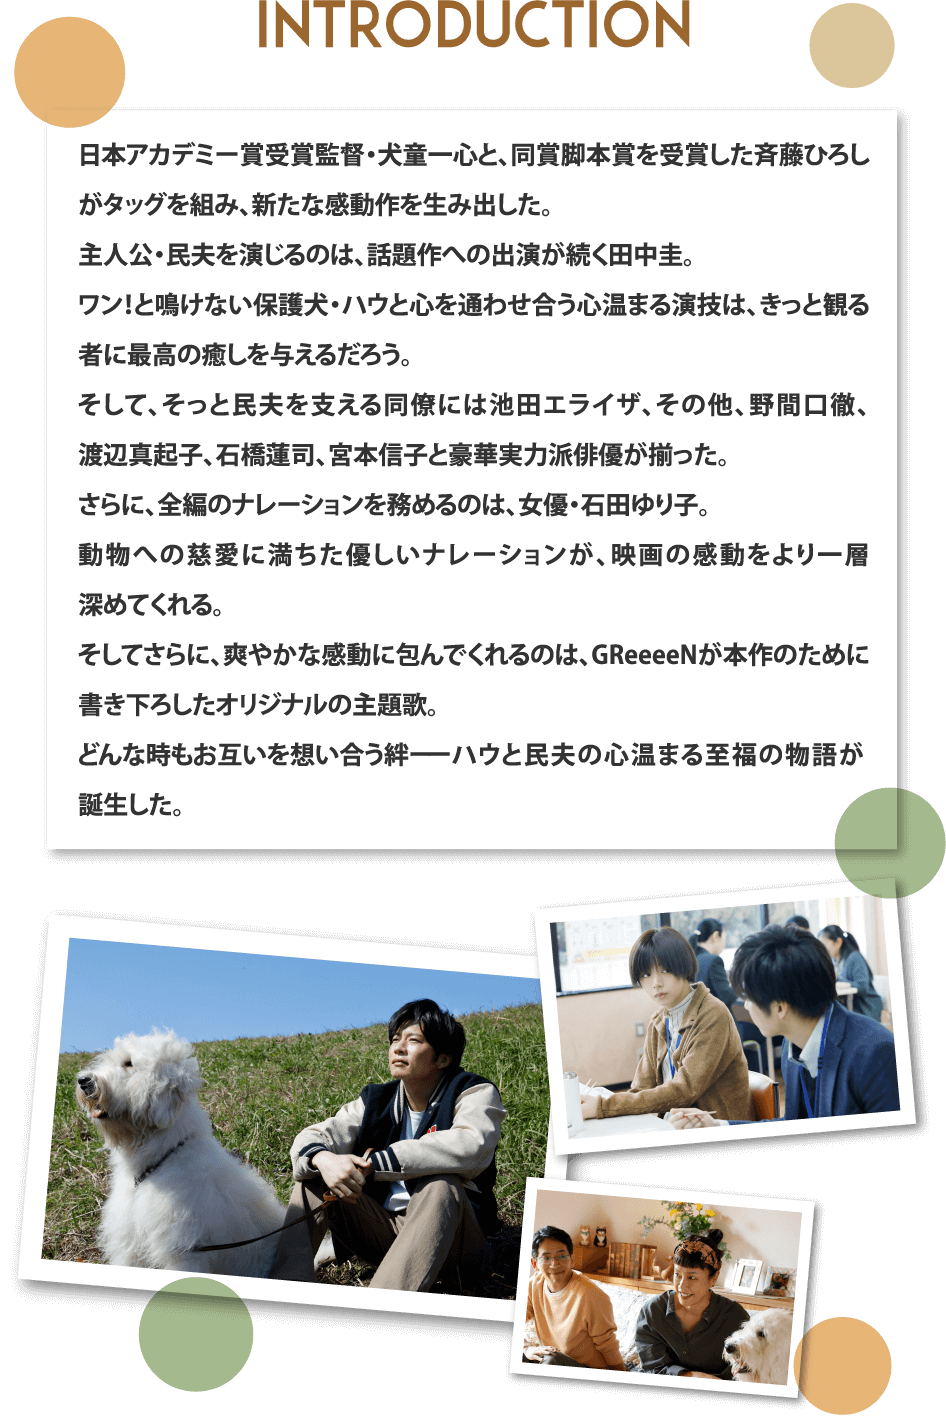 イントロダクション：日本アカデミー賞受賞監督・犬童一心と、同賞脚本賞を受賞した斉藤ひろしがタッグを組み、新たな感動作を生み出した。主人公・民夫を演じるのは、話題作への出演が続く田中圭。ワン！と鳴けない保護犬・ハウと心を通わせ合う心温まる演技は、きっと観る者に最高の癒しを与えるだろう。そして、そっと民夫を支える同僚には池田エライザ、その他、野間口徹、渡辺真起子、石橋蓮司、宮本信子と豪華実力派俳優が揃った。さらに、全編のナレーションを務めるのは、女優・石田ゆり子。動物への慈愛に満ちた優しいナレーションが、映画の感動をより一層深めてくれる。そしてさらに、爽やかな感動に包んでくれるのは、GReeeeNが本作のために書き下ろしたオリジナルの主題歌。どんな時もお互いを想い合う絆ーーハウと民夫の心温まる至福の物語が誕生した。